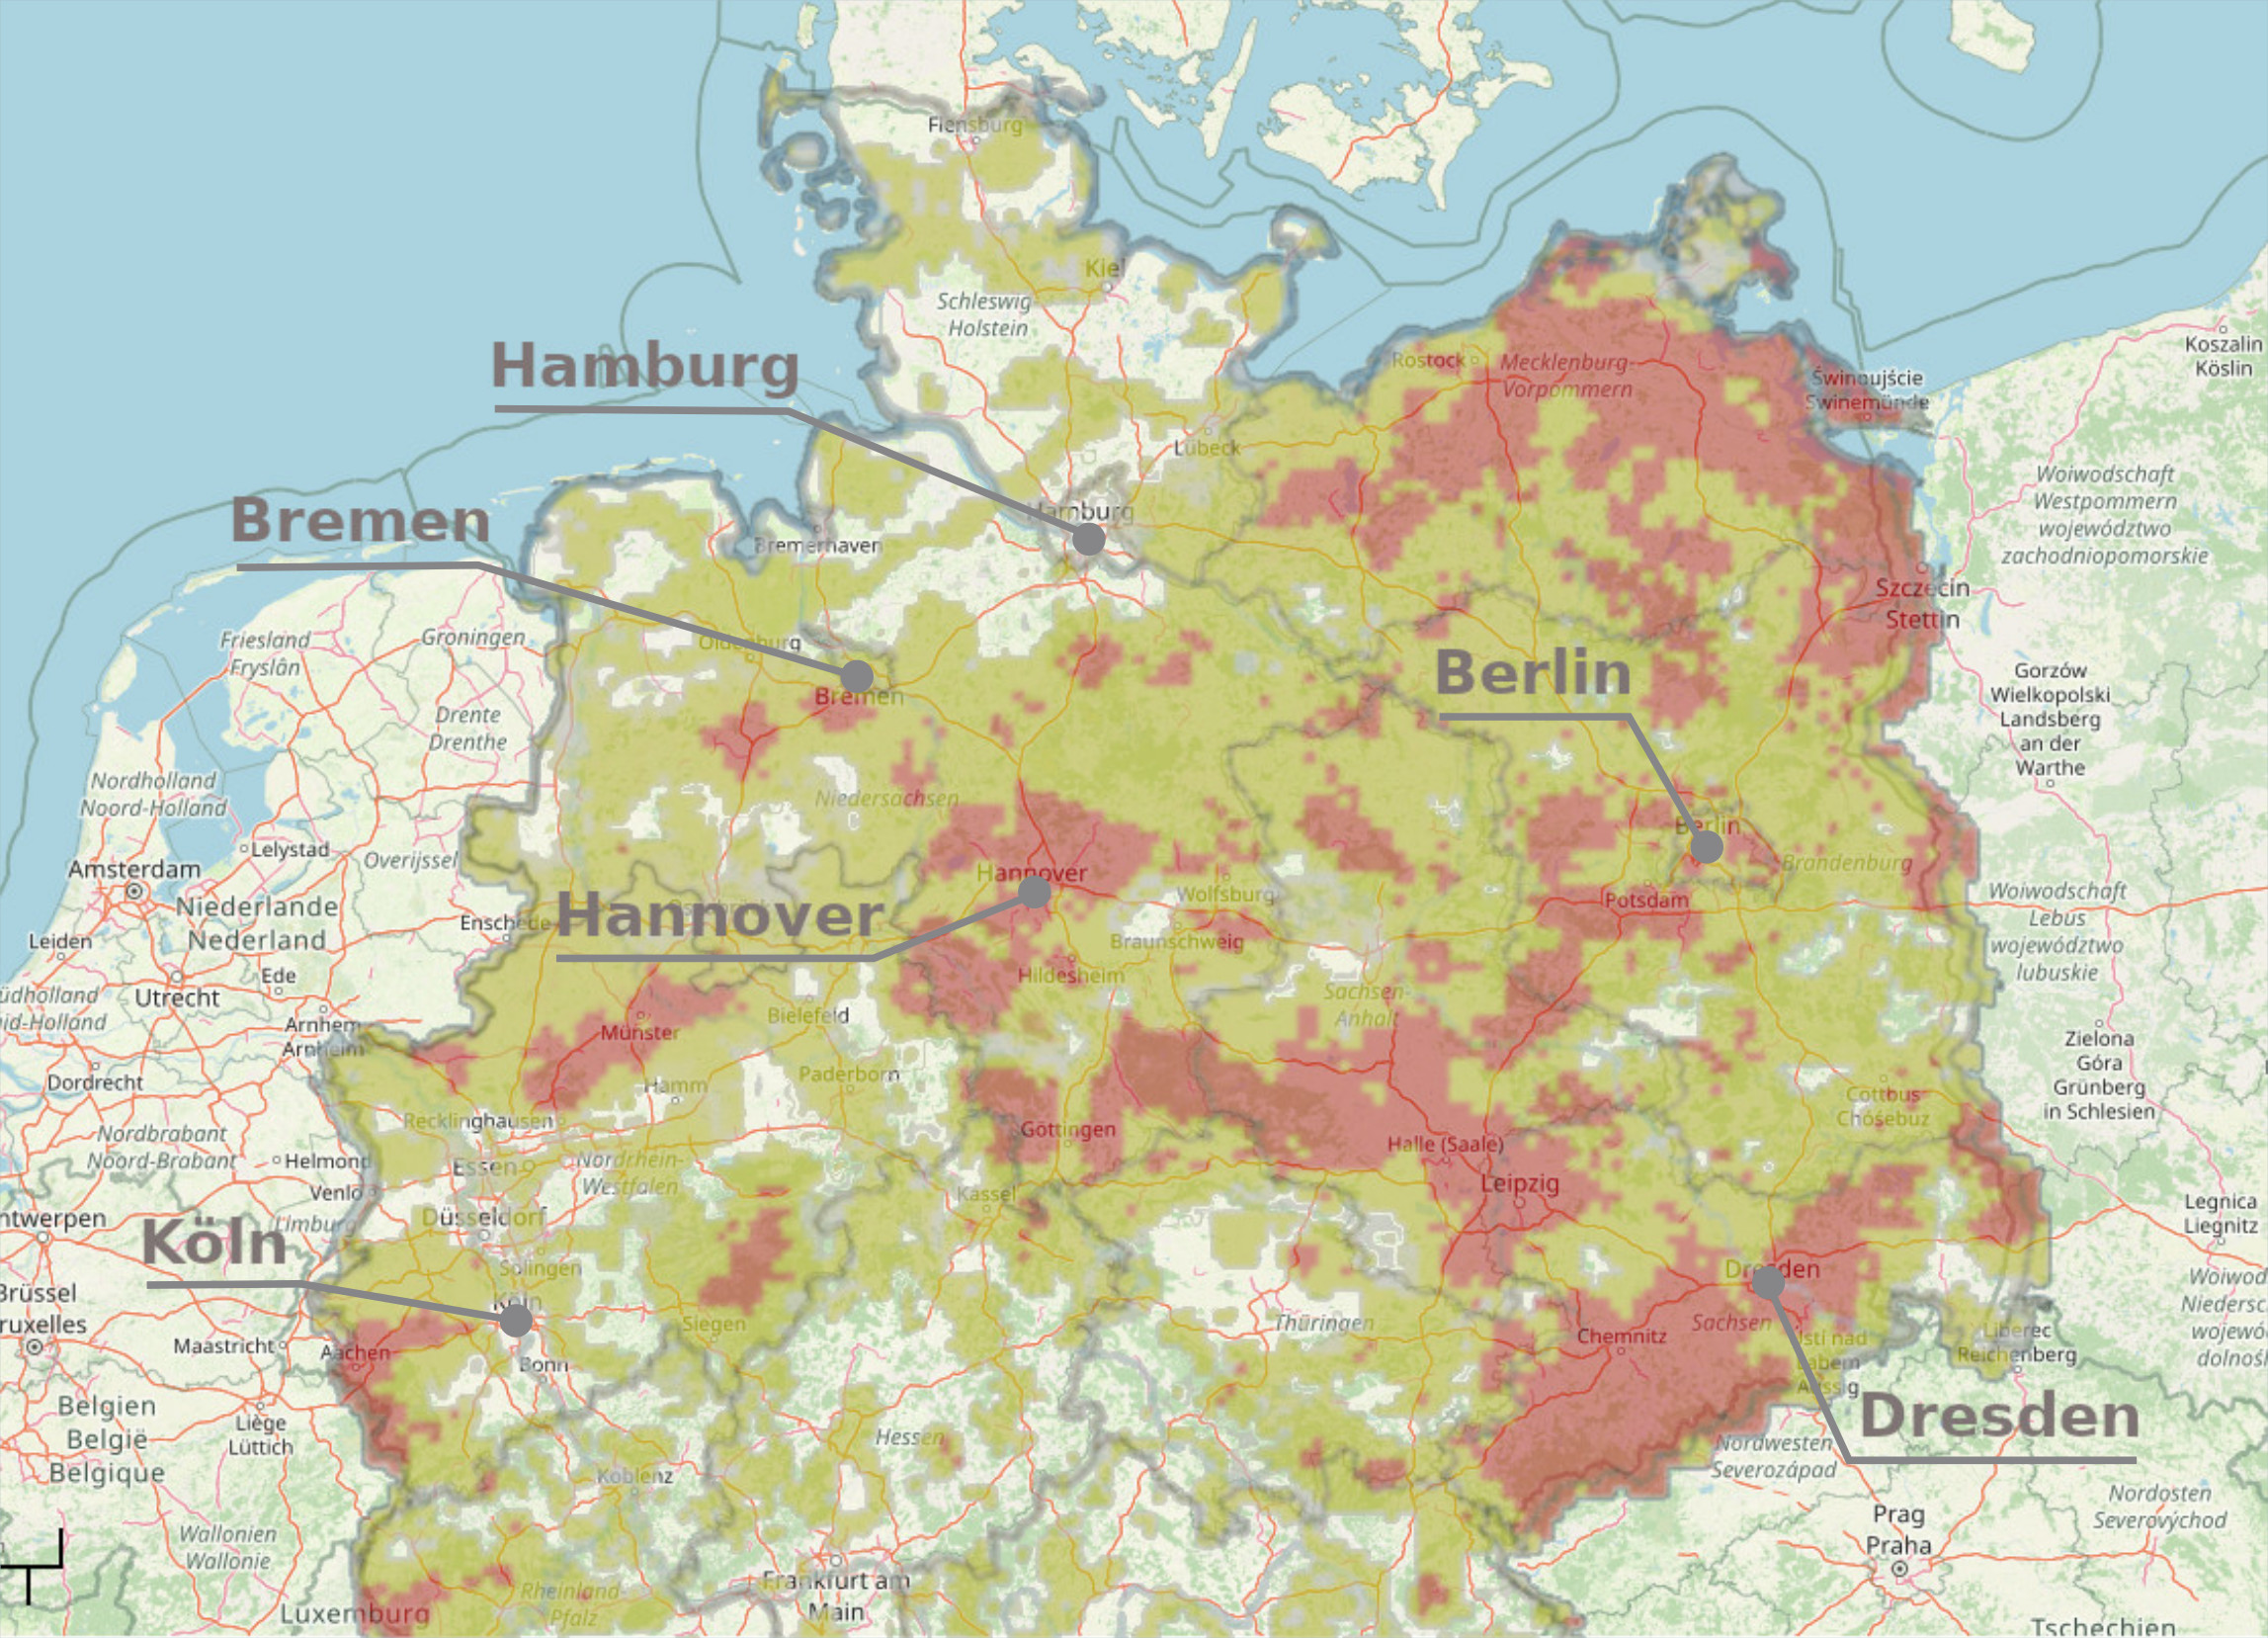 Karten mit von Trockenheit betroffenen Gebieten in Norddeutschland